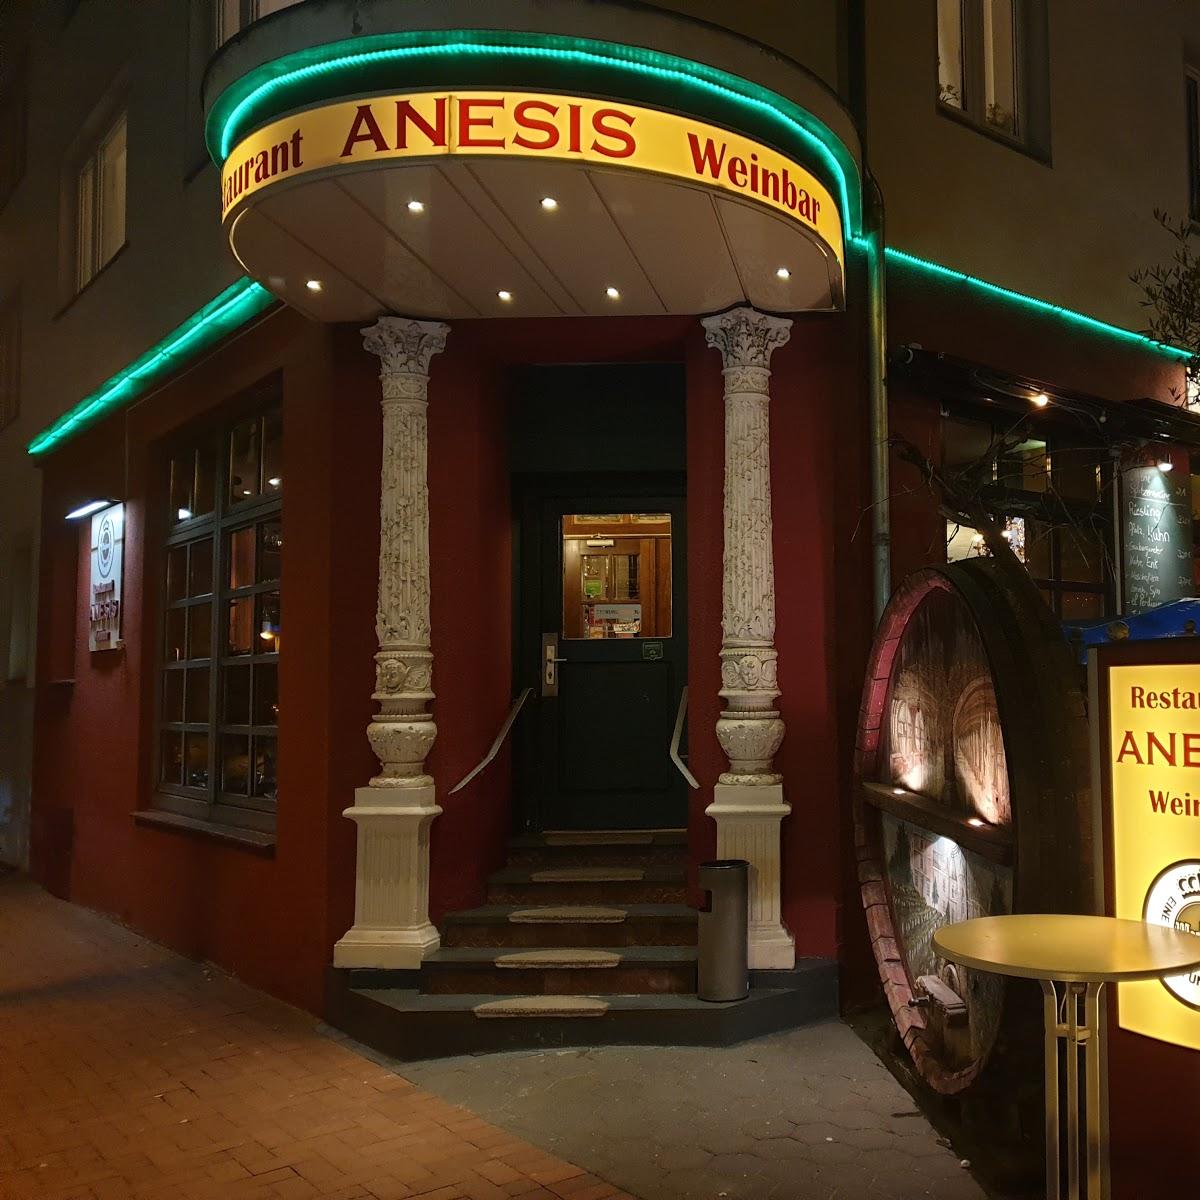 Restaurant "Restaurant Anesis" in Hannover